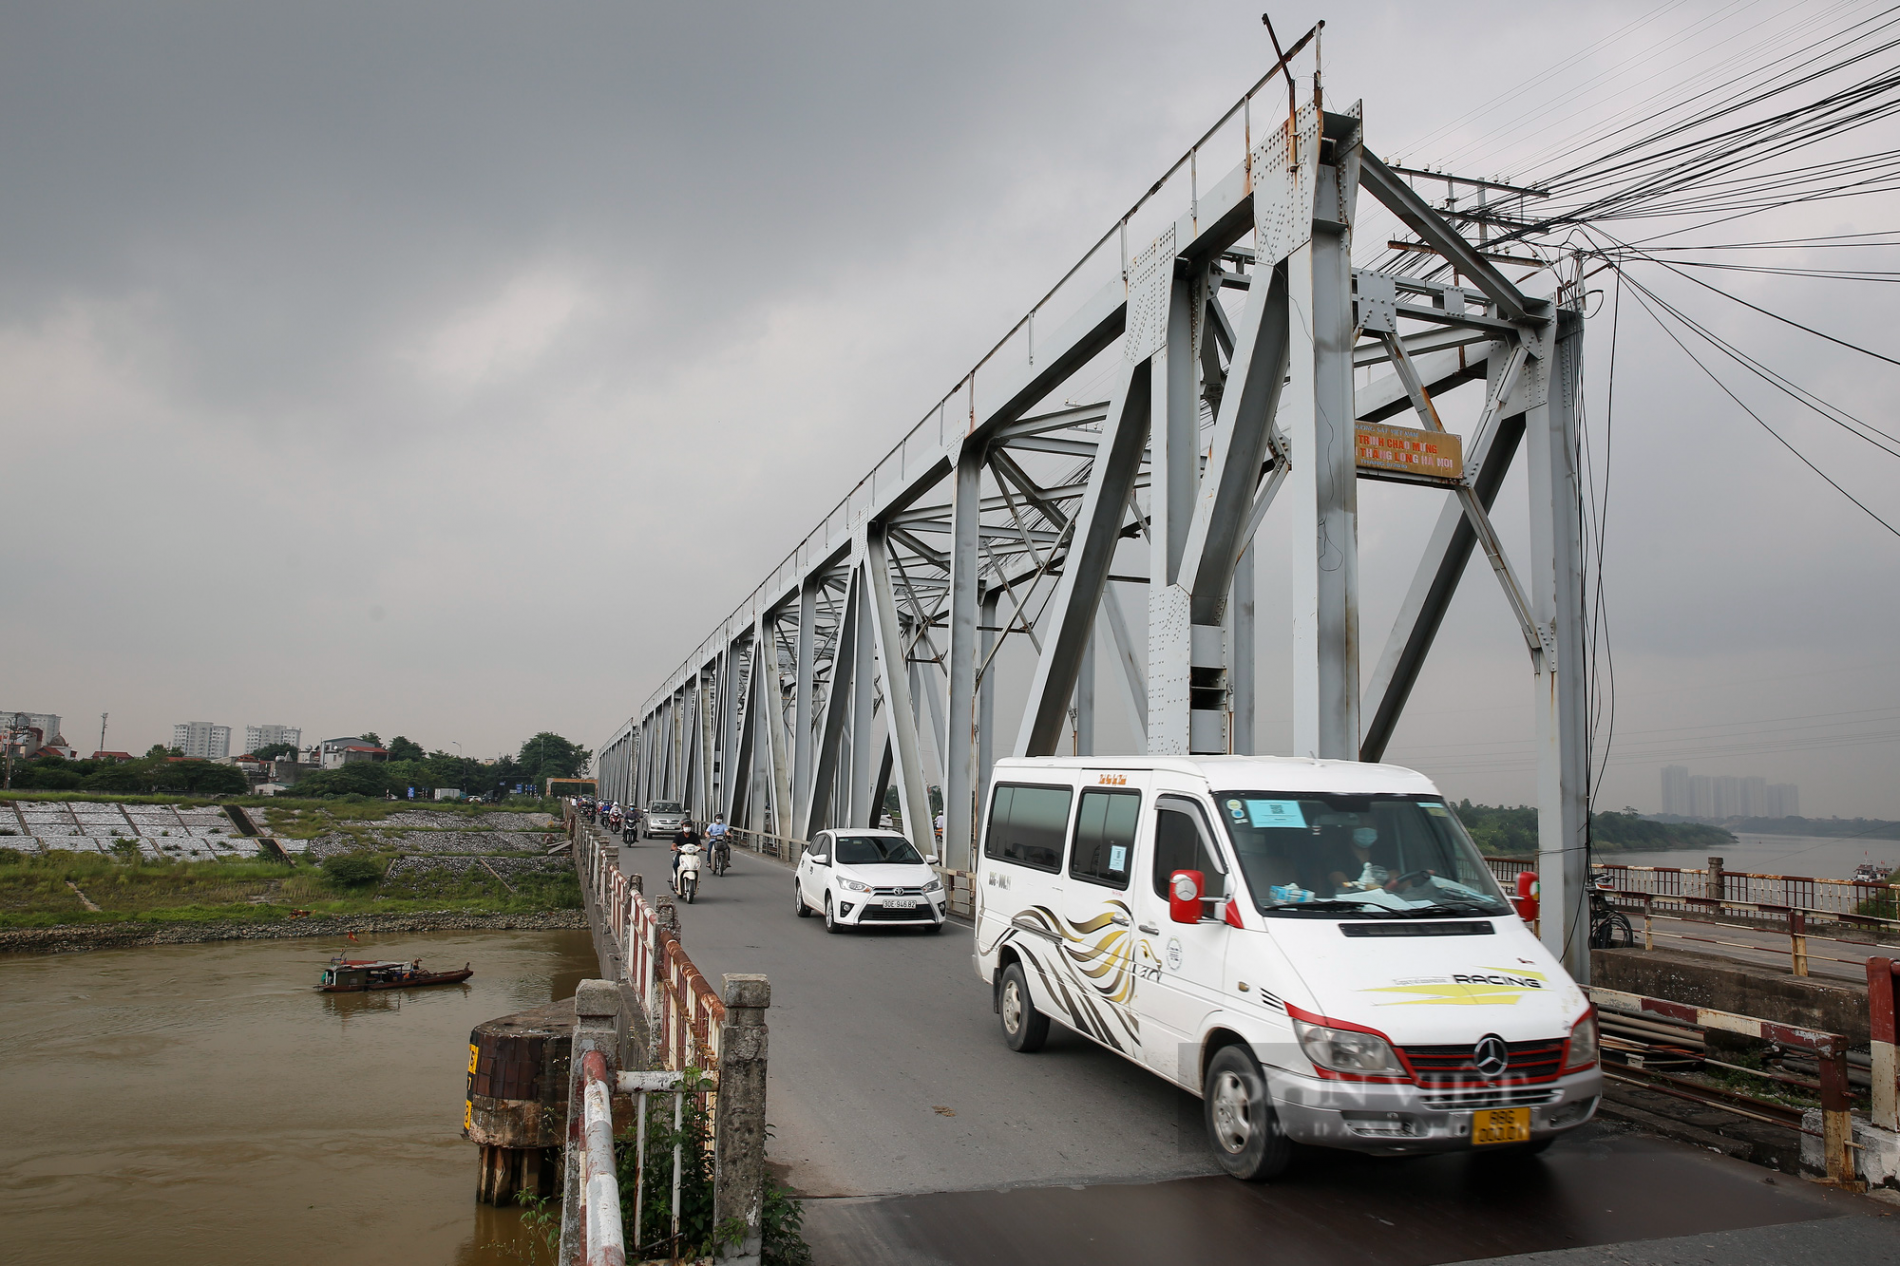 Hà Nội: Cận cảnh cây cầu xuống cấp nghiêm trọng được đề xuất xây mới trị giá gần 1800 tỷ đồng - Ảnh 2.